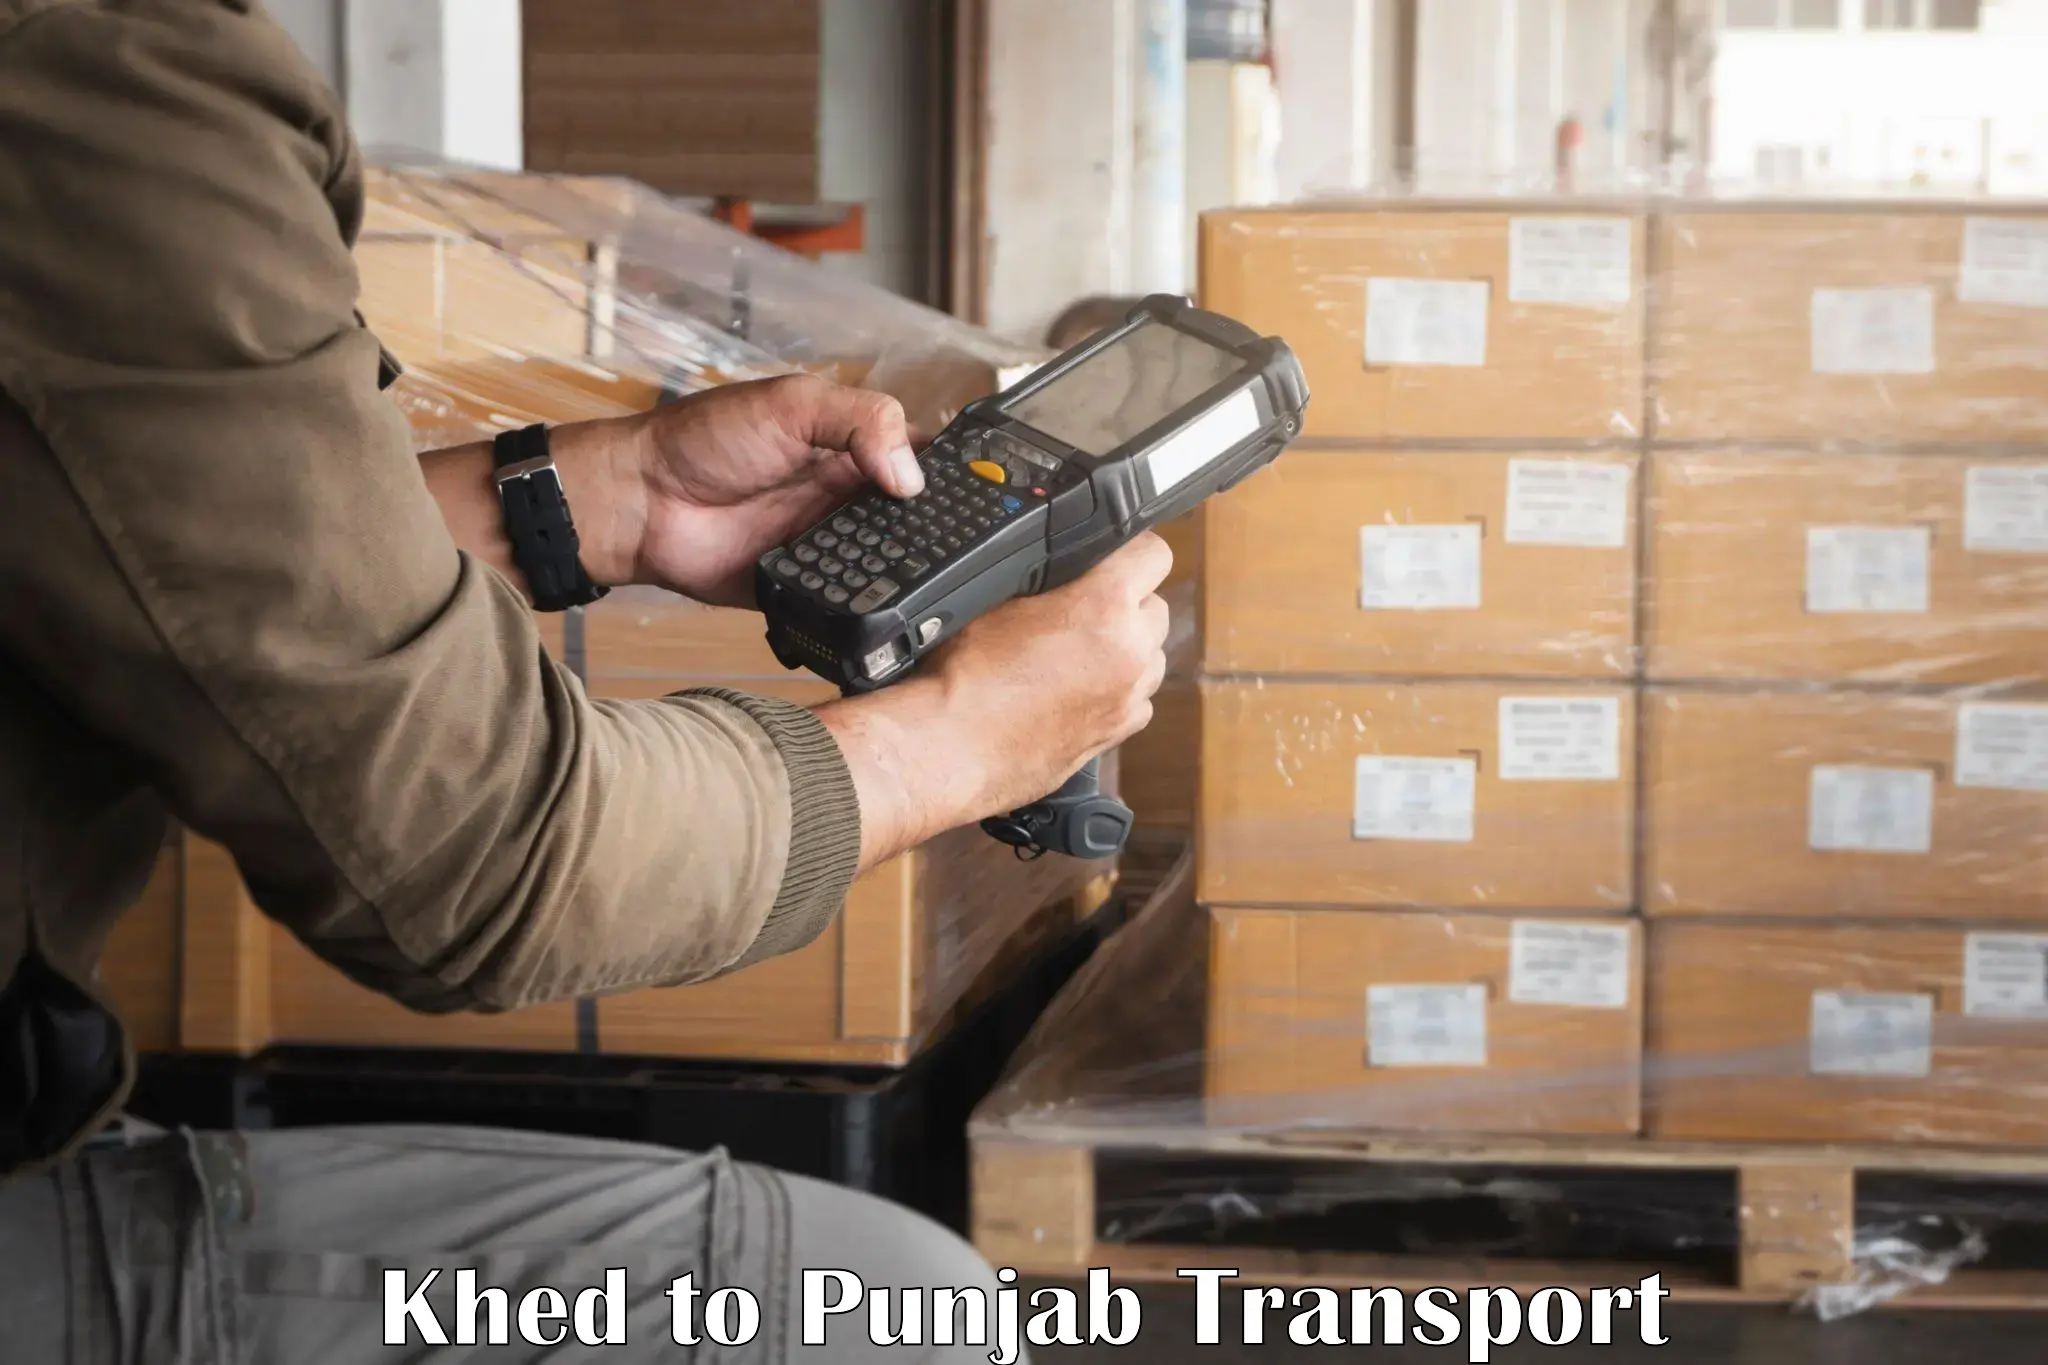 Pick up transport service Khed to Sangrur